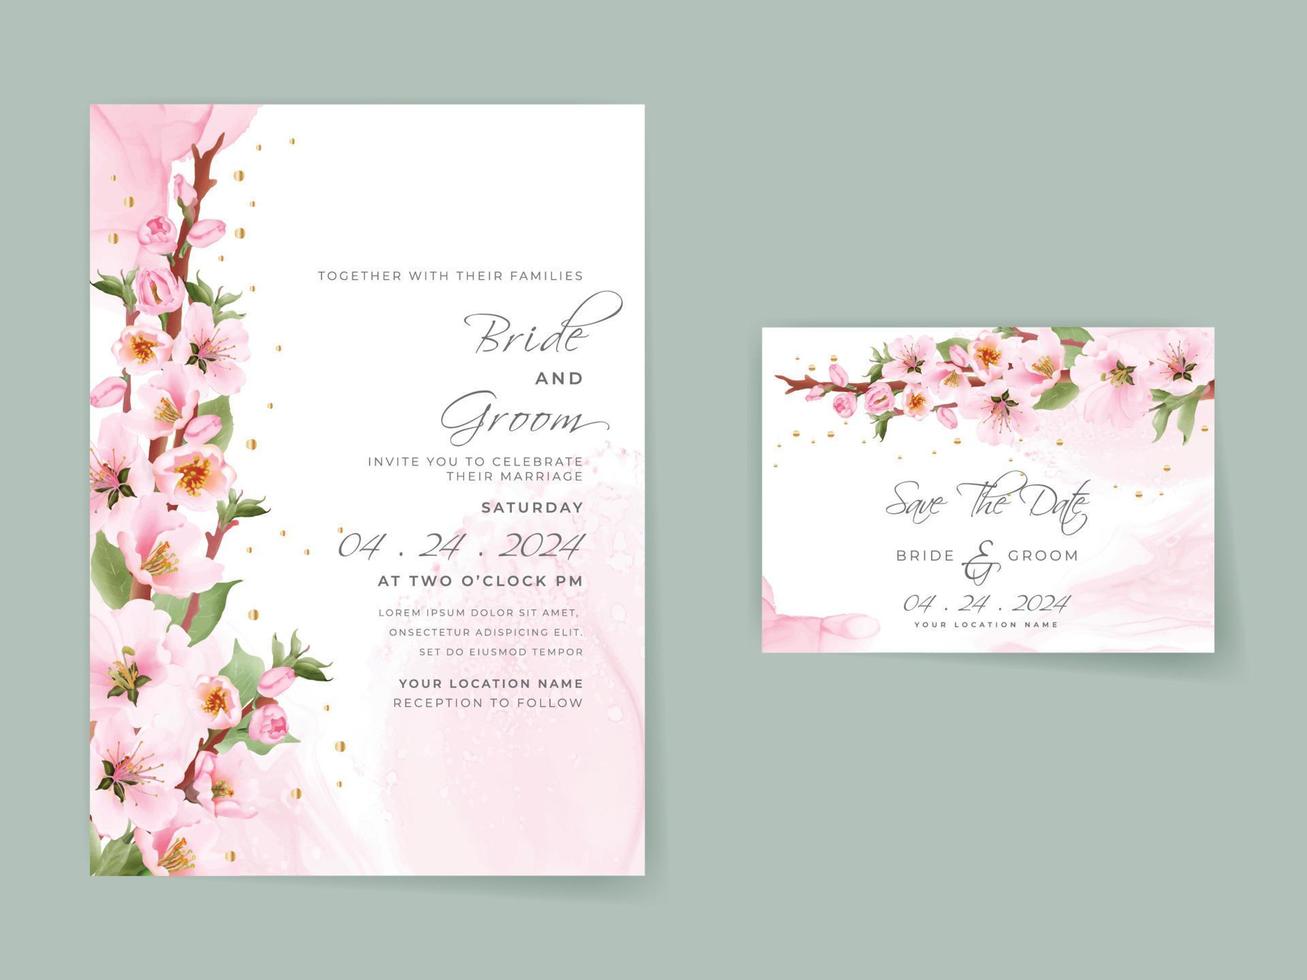 bellissimo modello di carta di invito a nozze sakura rosa tenue vettore